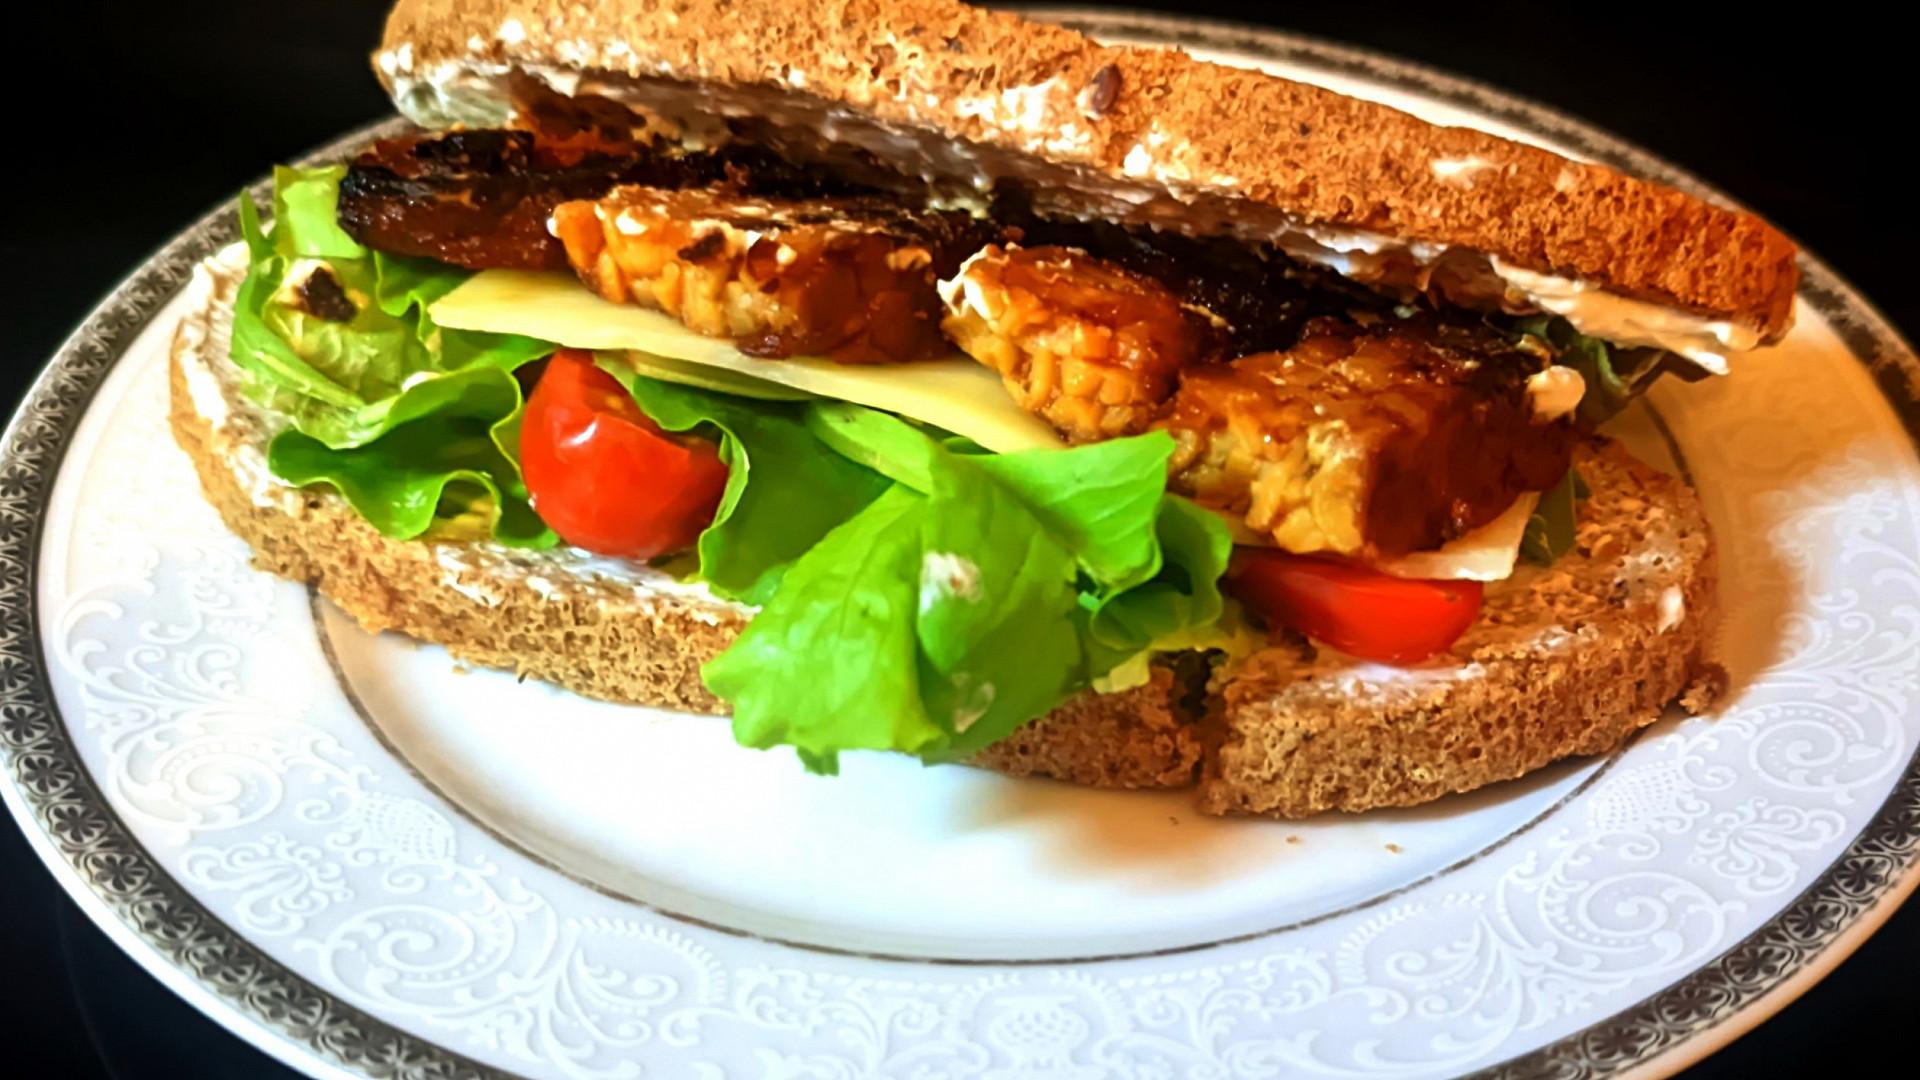 Grilované vegetariánské tempeh sendviče